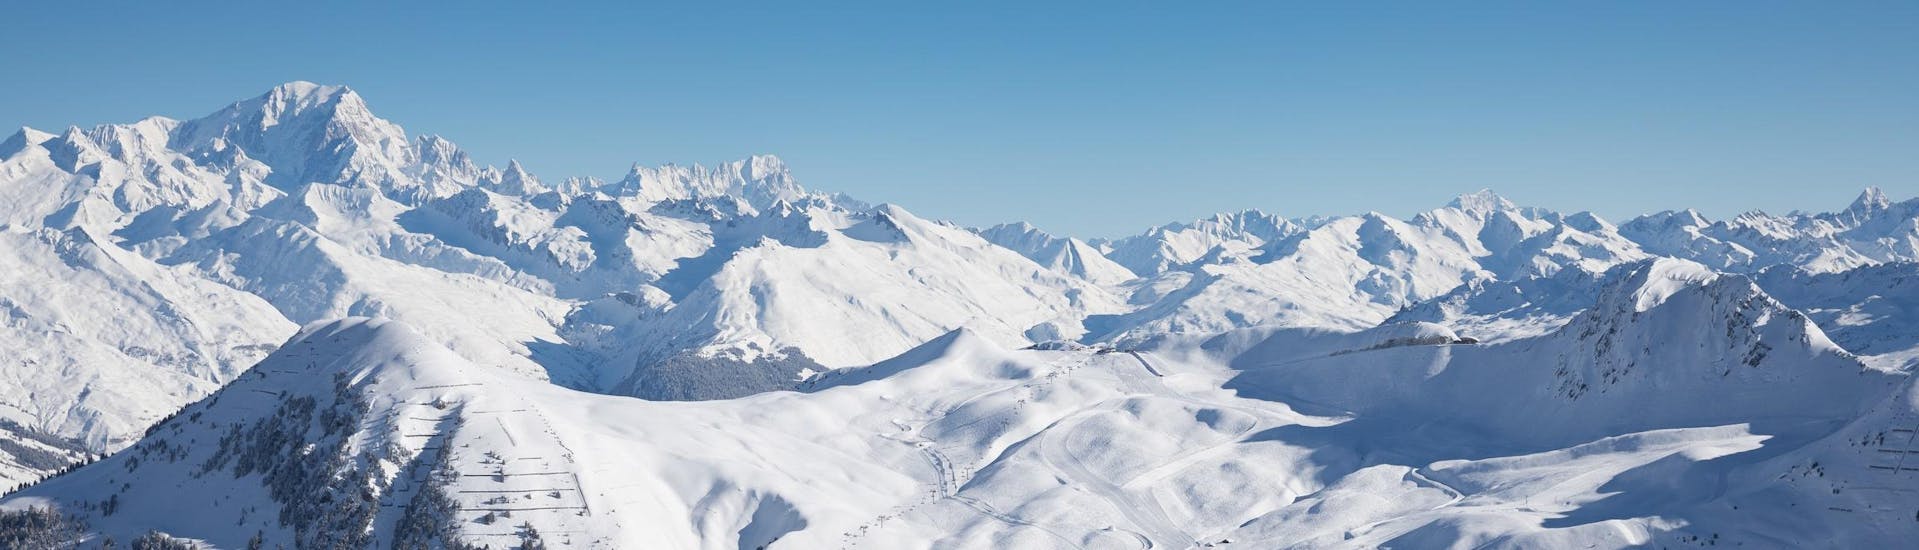 Vue sur les montagnes enneigées de la station de ski de La Plagne où l'école de ski dispense des cours de ski.